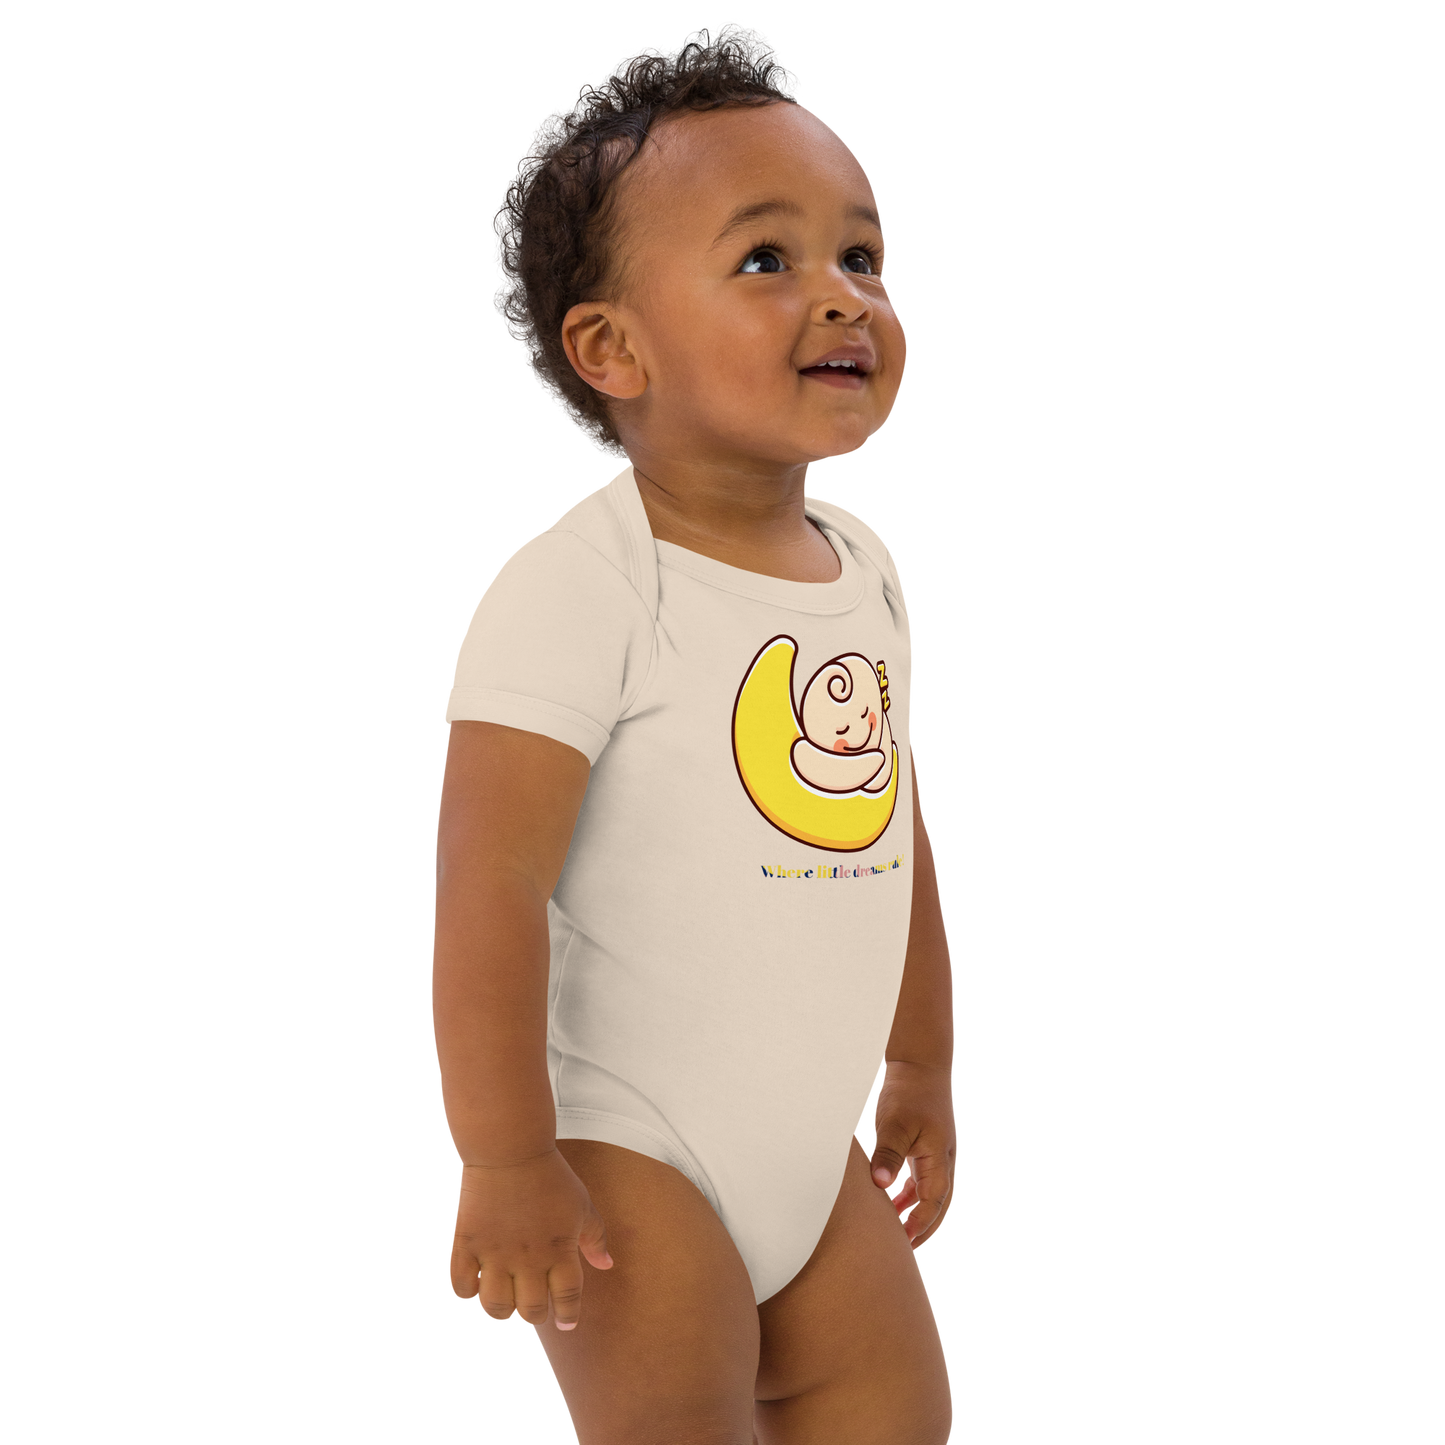 Premium organic cotton baby bodysuit